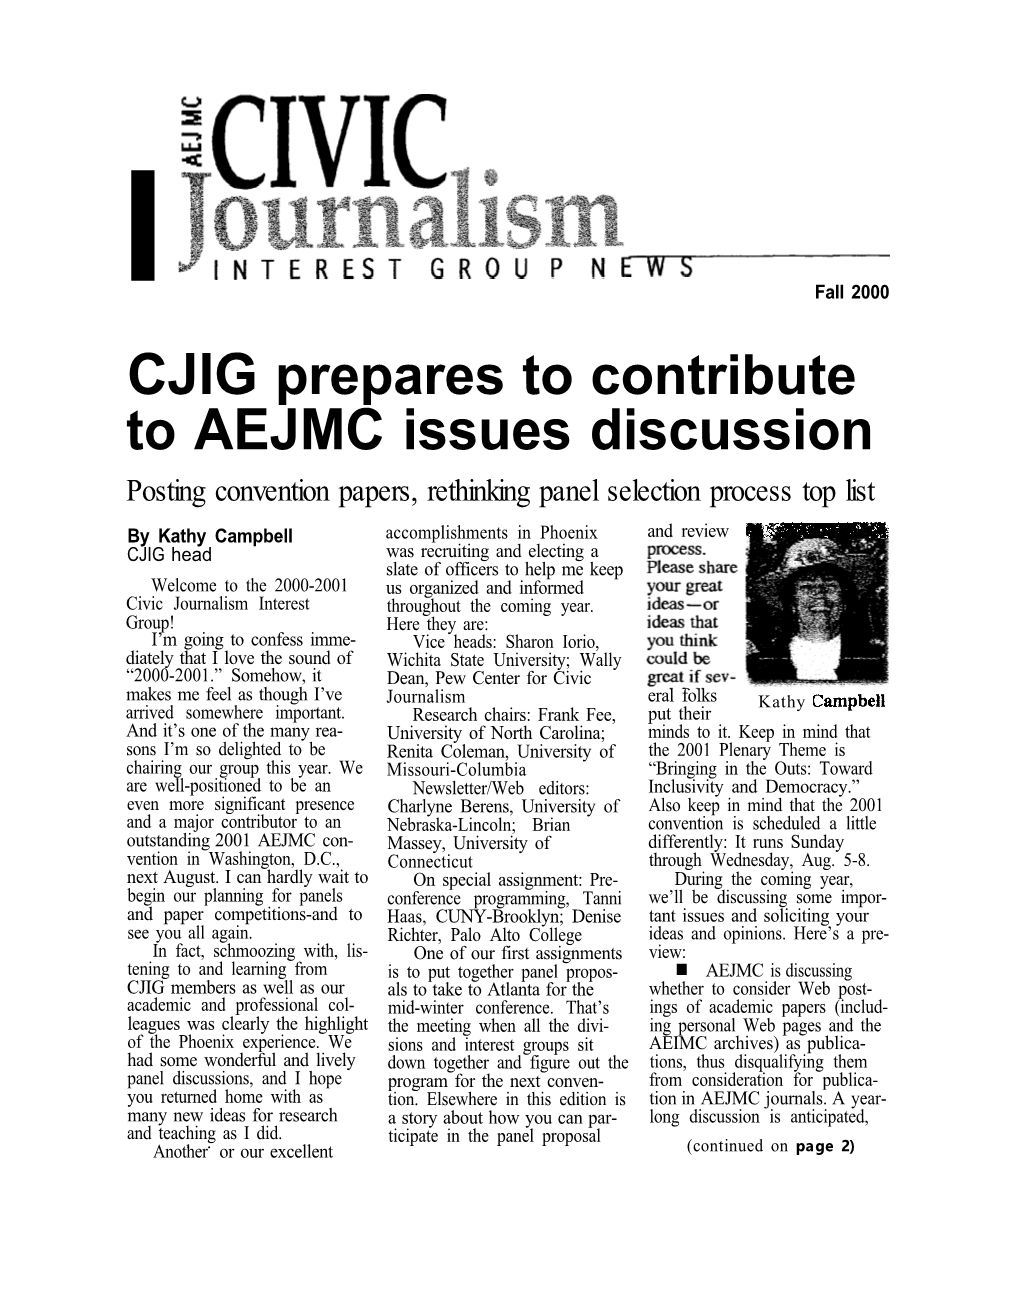 CJIG News: Fall 2000